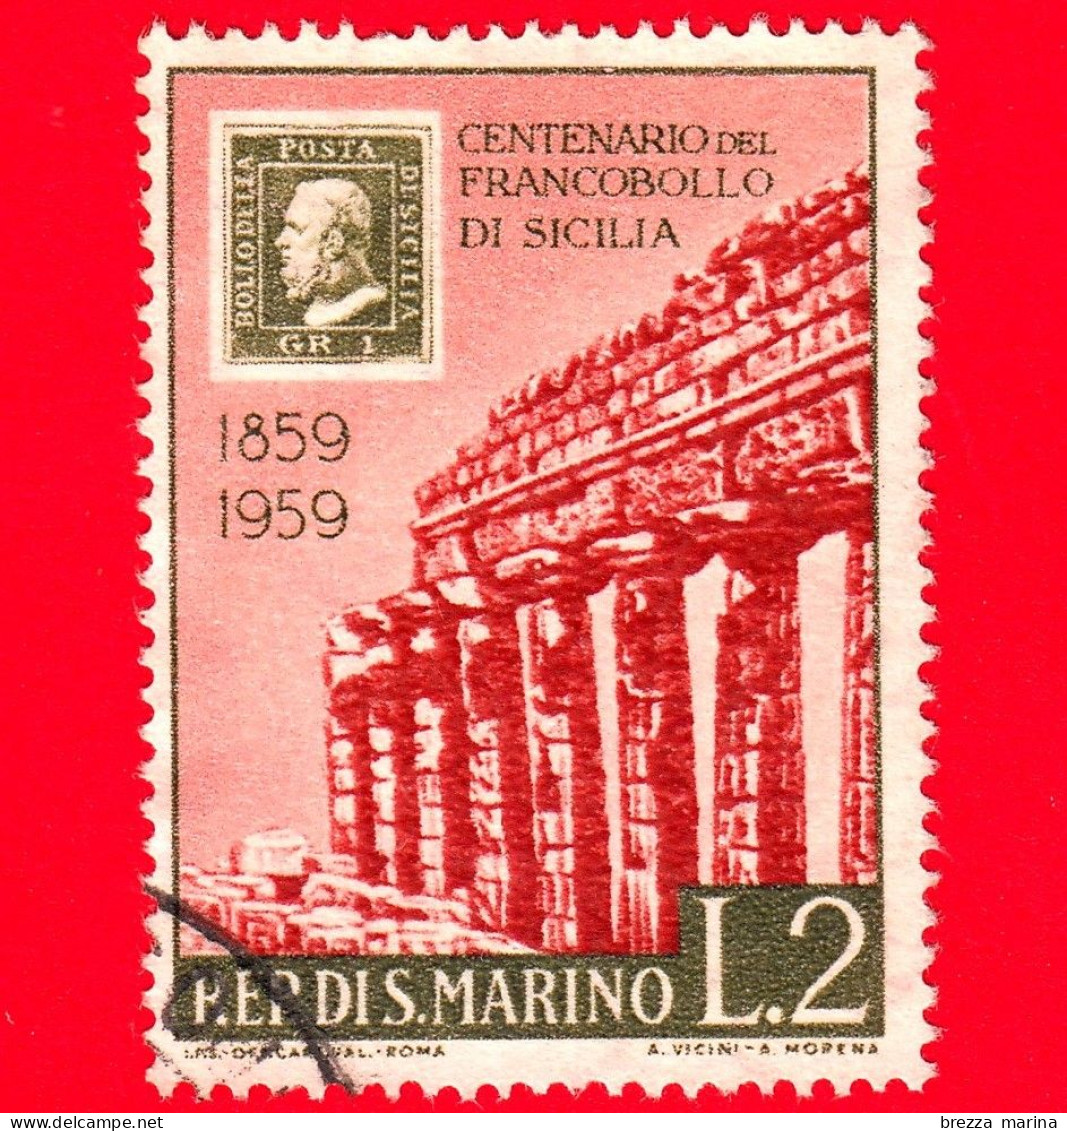 SAN MARINO - Usato - 1959 - Centenario Dei Francobolli Di Sicilia - Tempio Di Selinunte - 2 L. - Gebruikt